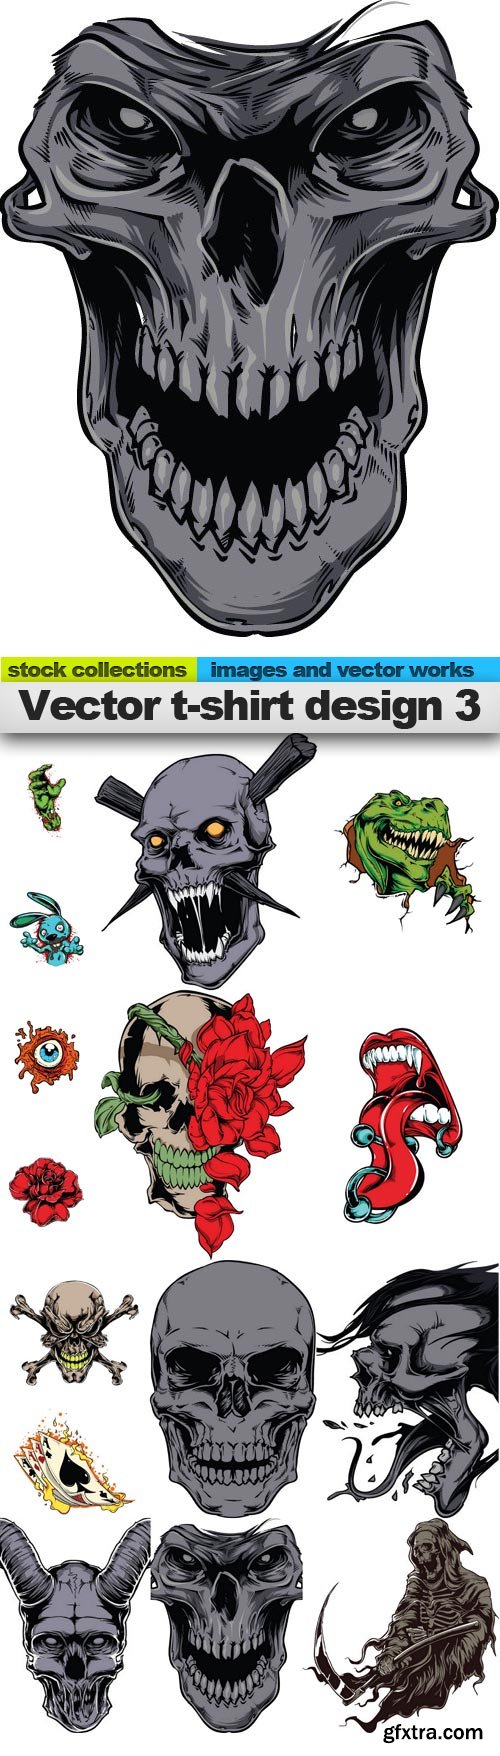 Vector t-shirt design 3, 15 x EPS